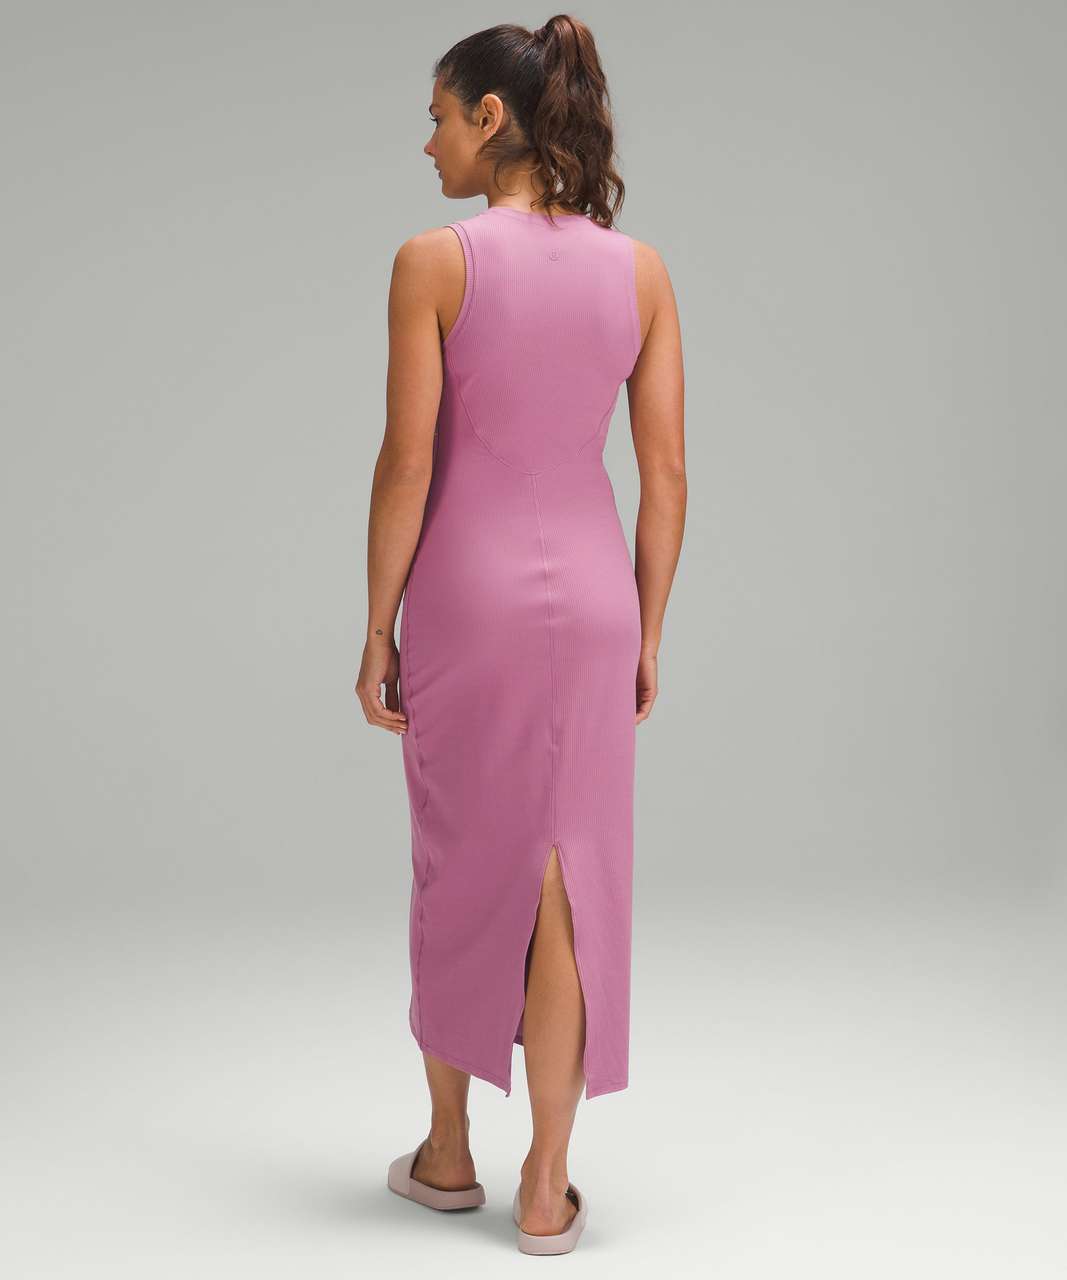 Lululemon Align Dress Twilight Rose Size 6 NWT